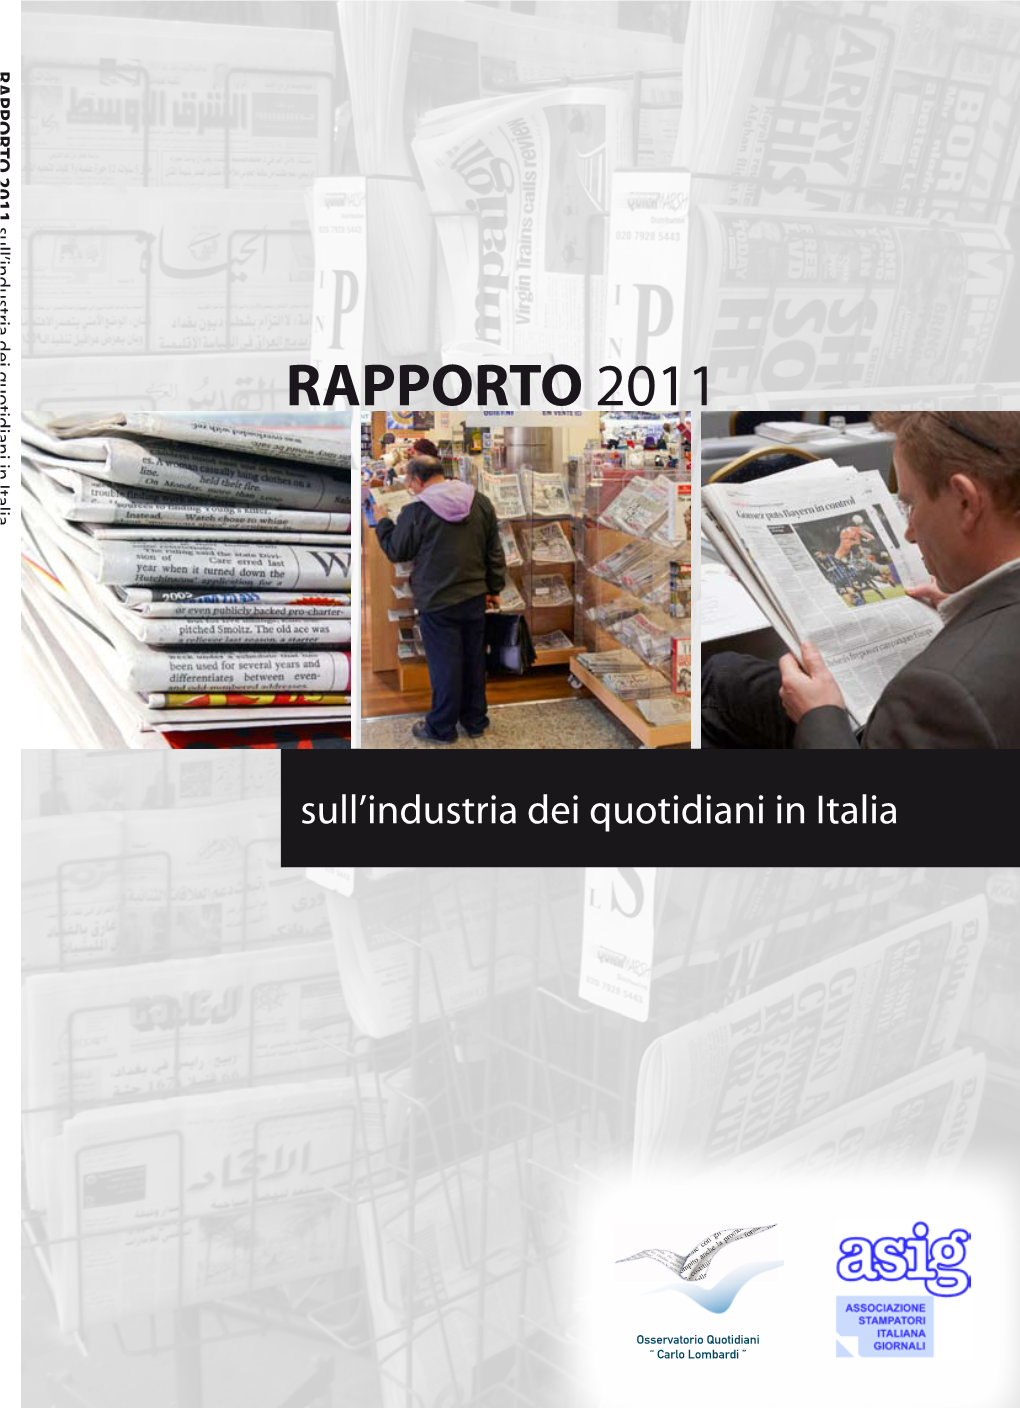 Rapporto 2011 Sull'industria Italiana Dei Quotidiani